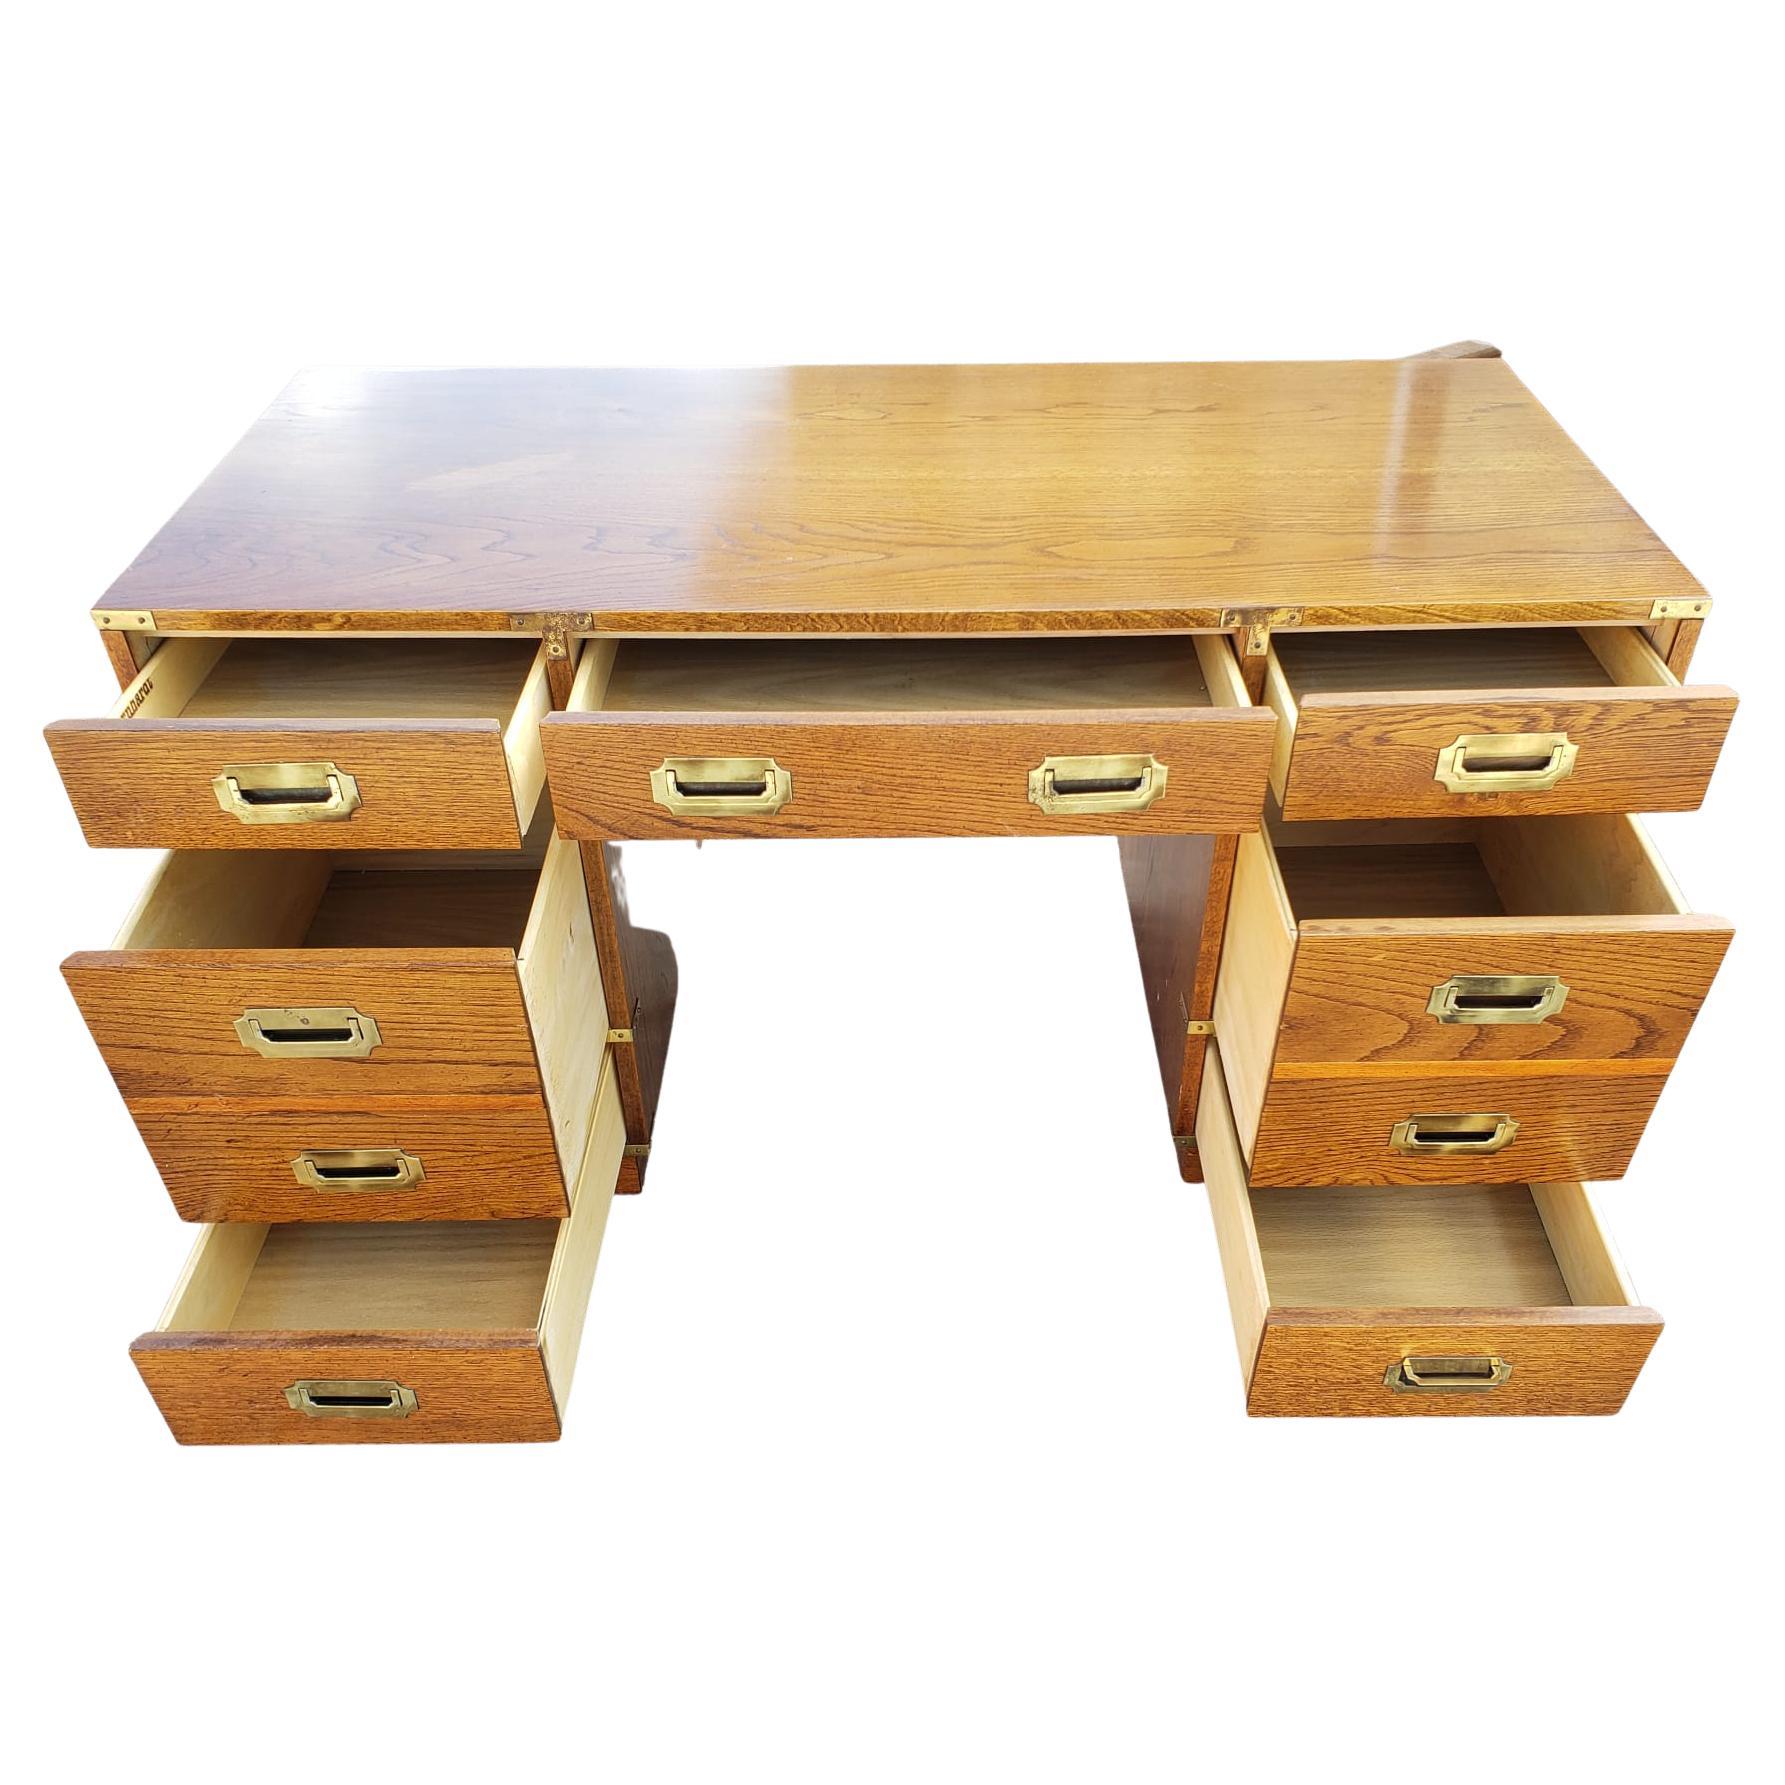 Bernhardt Vintage Campaigner Eiche Partner Schreibtisch mit viel Stauraum und Aktenschränke. 
Maße: 54'B x 24 